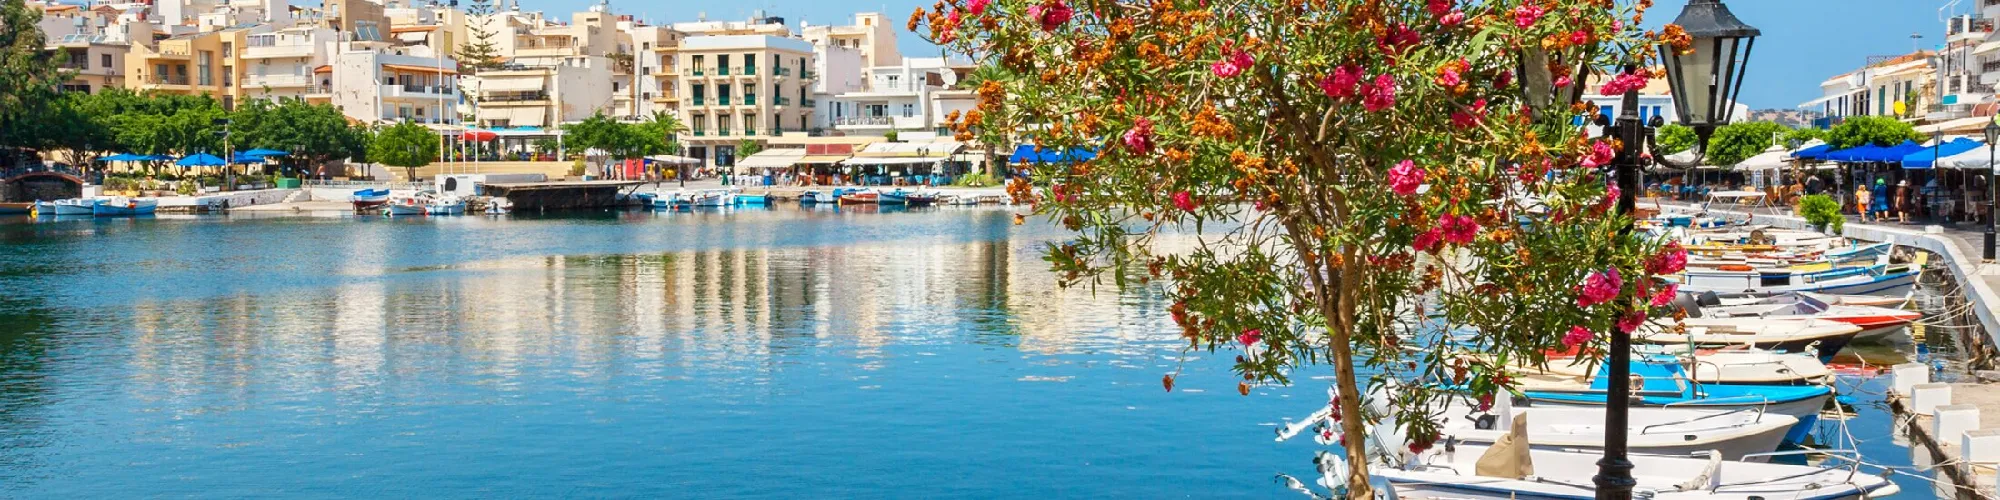 Zeit für Urlaubsgefühle auf Kreta background image